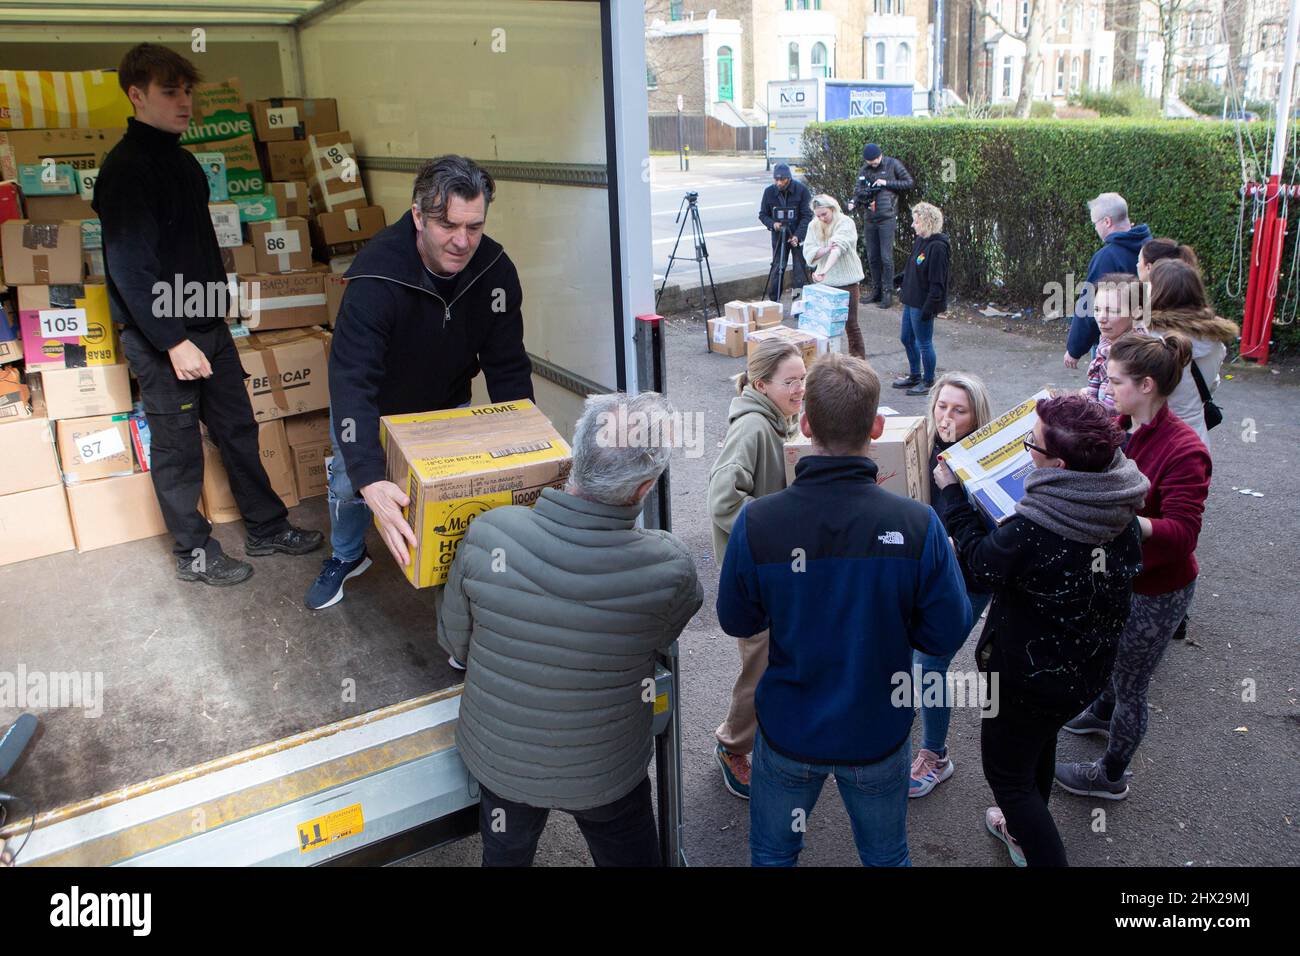 Freiwillige beladen einen Lieferwagen mit Spenden für ukrainische Flüchtlinge, der aus dem Lewisham Polish Centre, Süd-London, zur Lieferung nach Polen vertrieben wird. Bilddatum: Mittwoch, 9. März 2022. Stockfoto